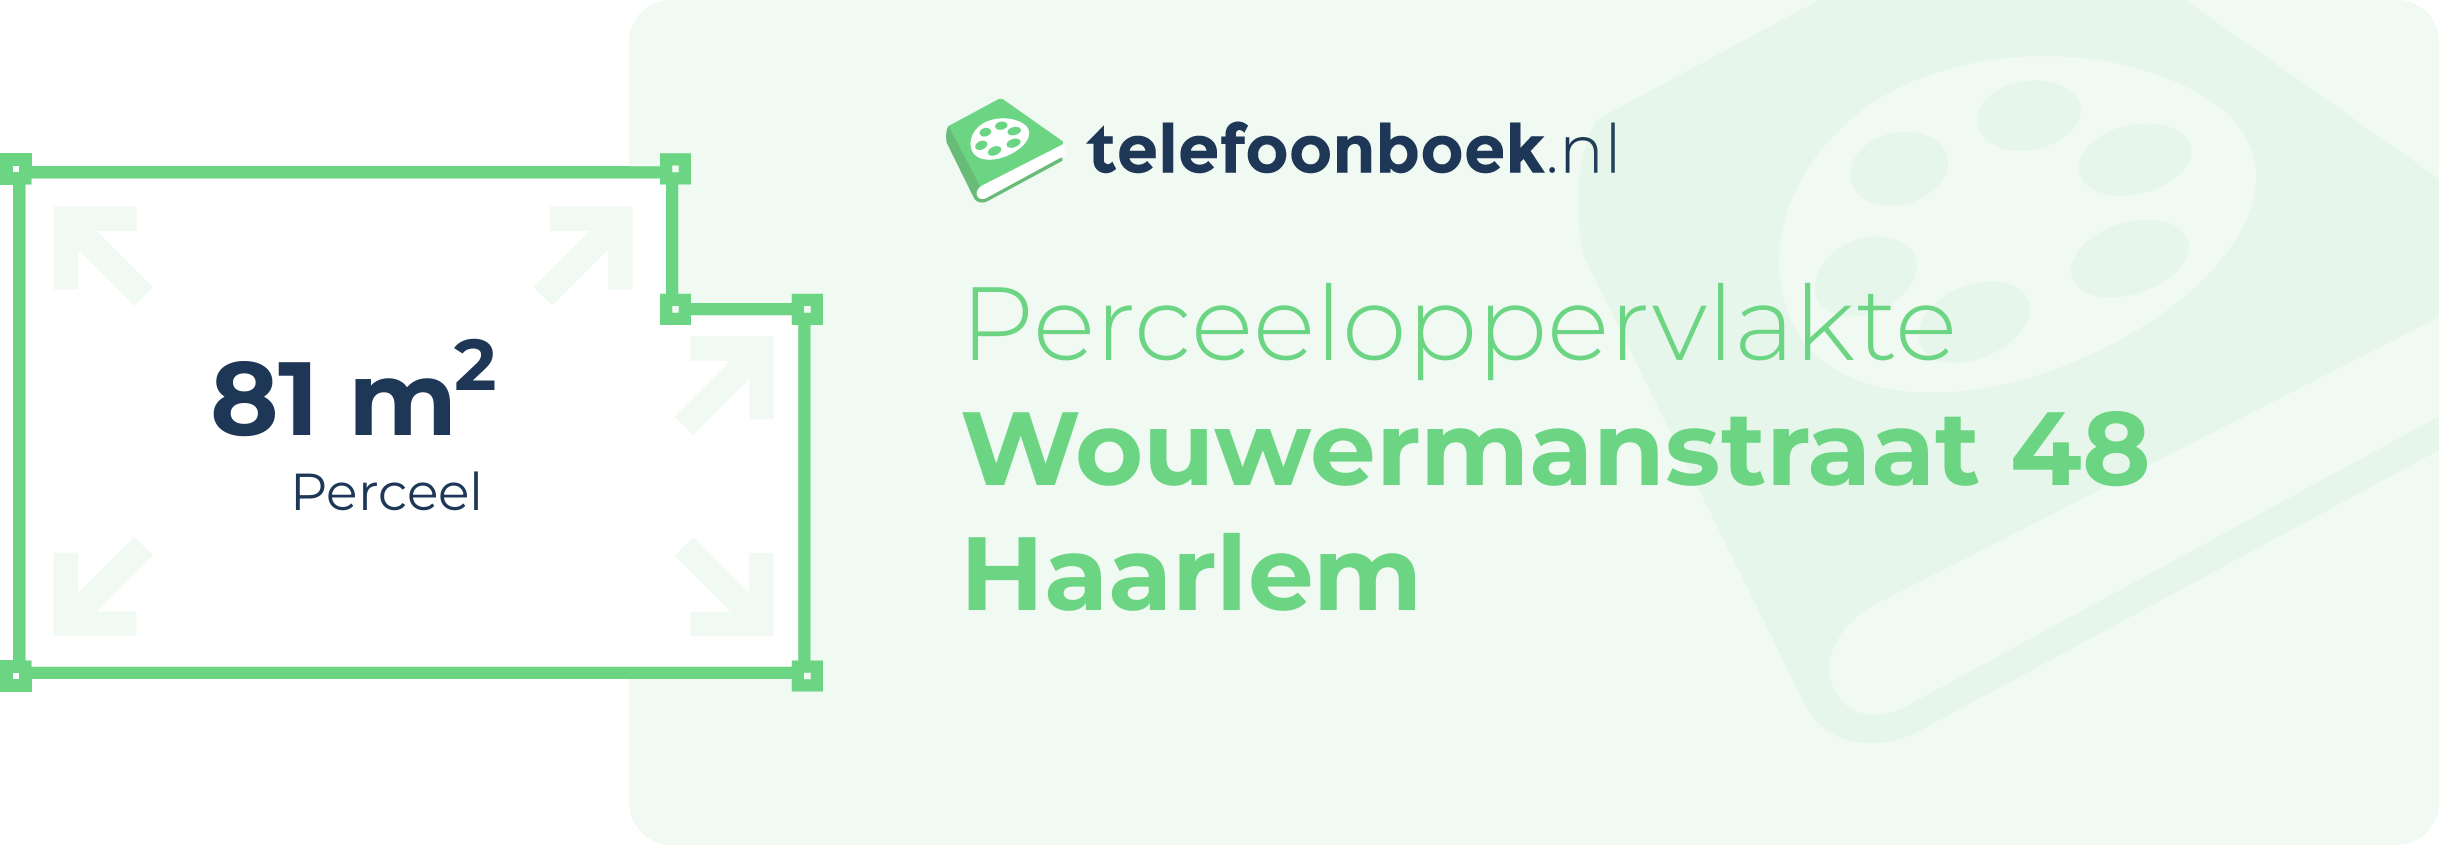 Perceeloppervlakte Wouwermanstraat 48 Haarlem